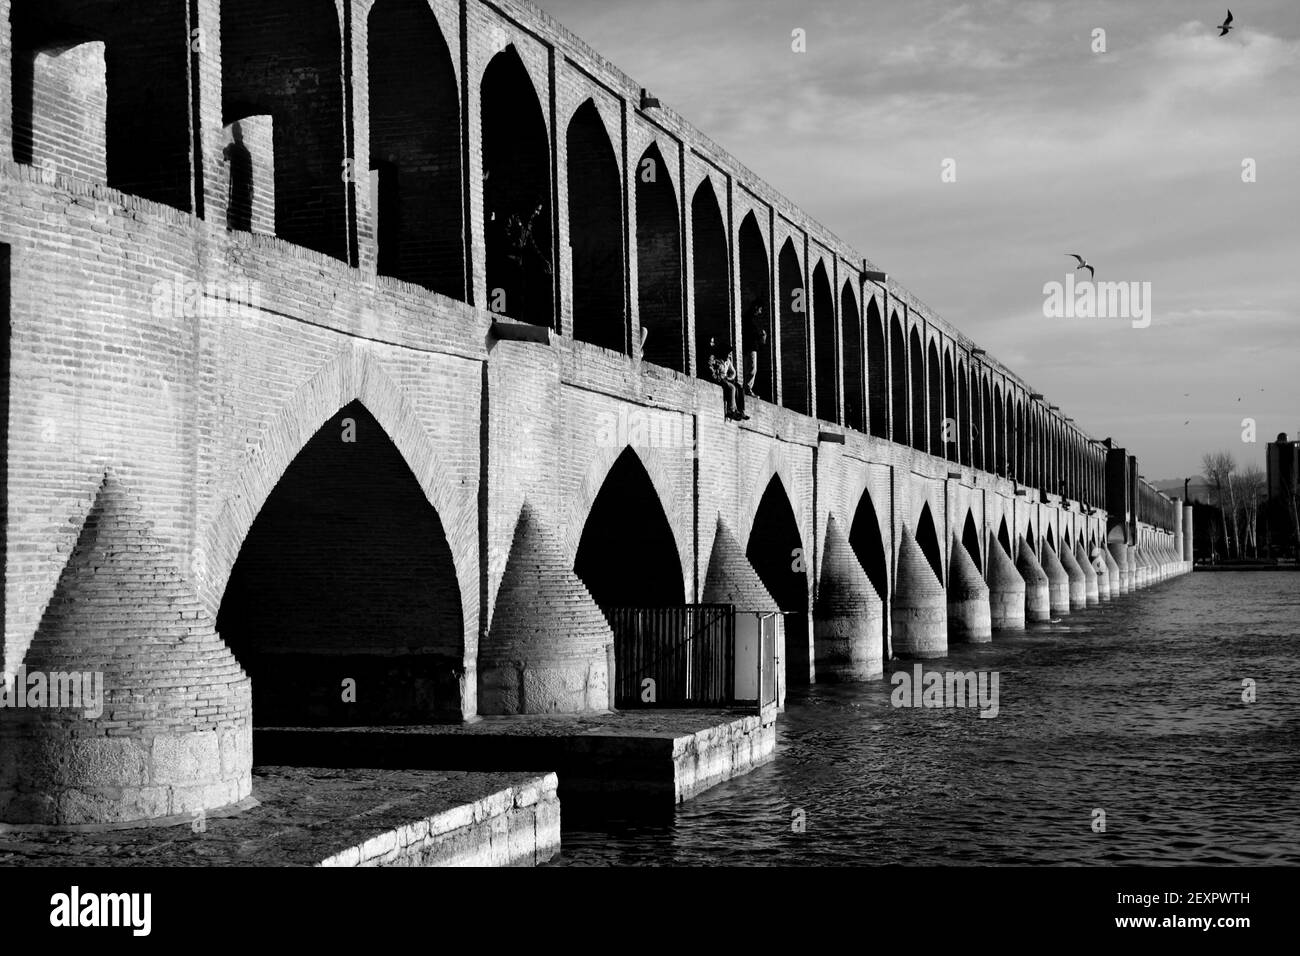 Monochrome, noir et blanc, image du pont si-o-Seh, Ispahan, République islamique d'Iran Banque D'Images